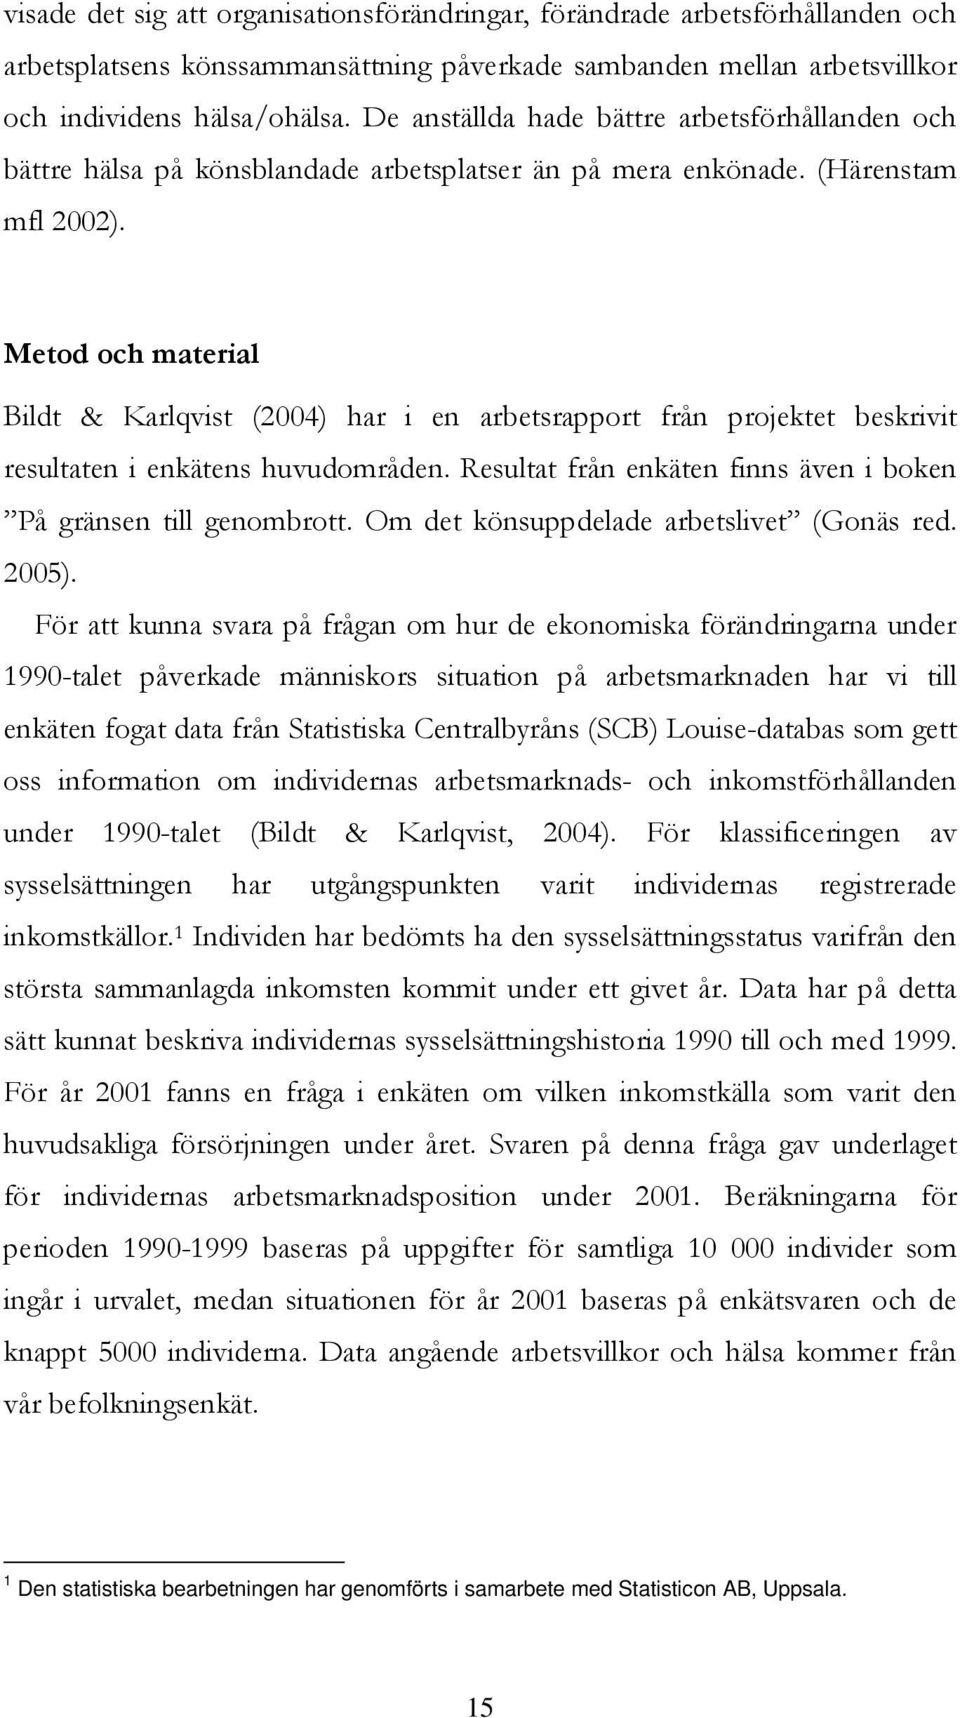 Metod och material Bildt & Karlqvist (2004) har i en arbetsrapport från projektet beskrivit resultaten i enkätens huvudområden. Resultat från enkäten finns även i boken På gränsen till genombrott.